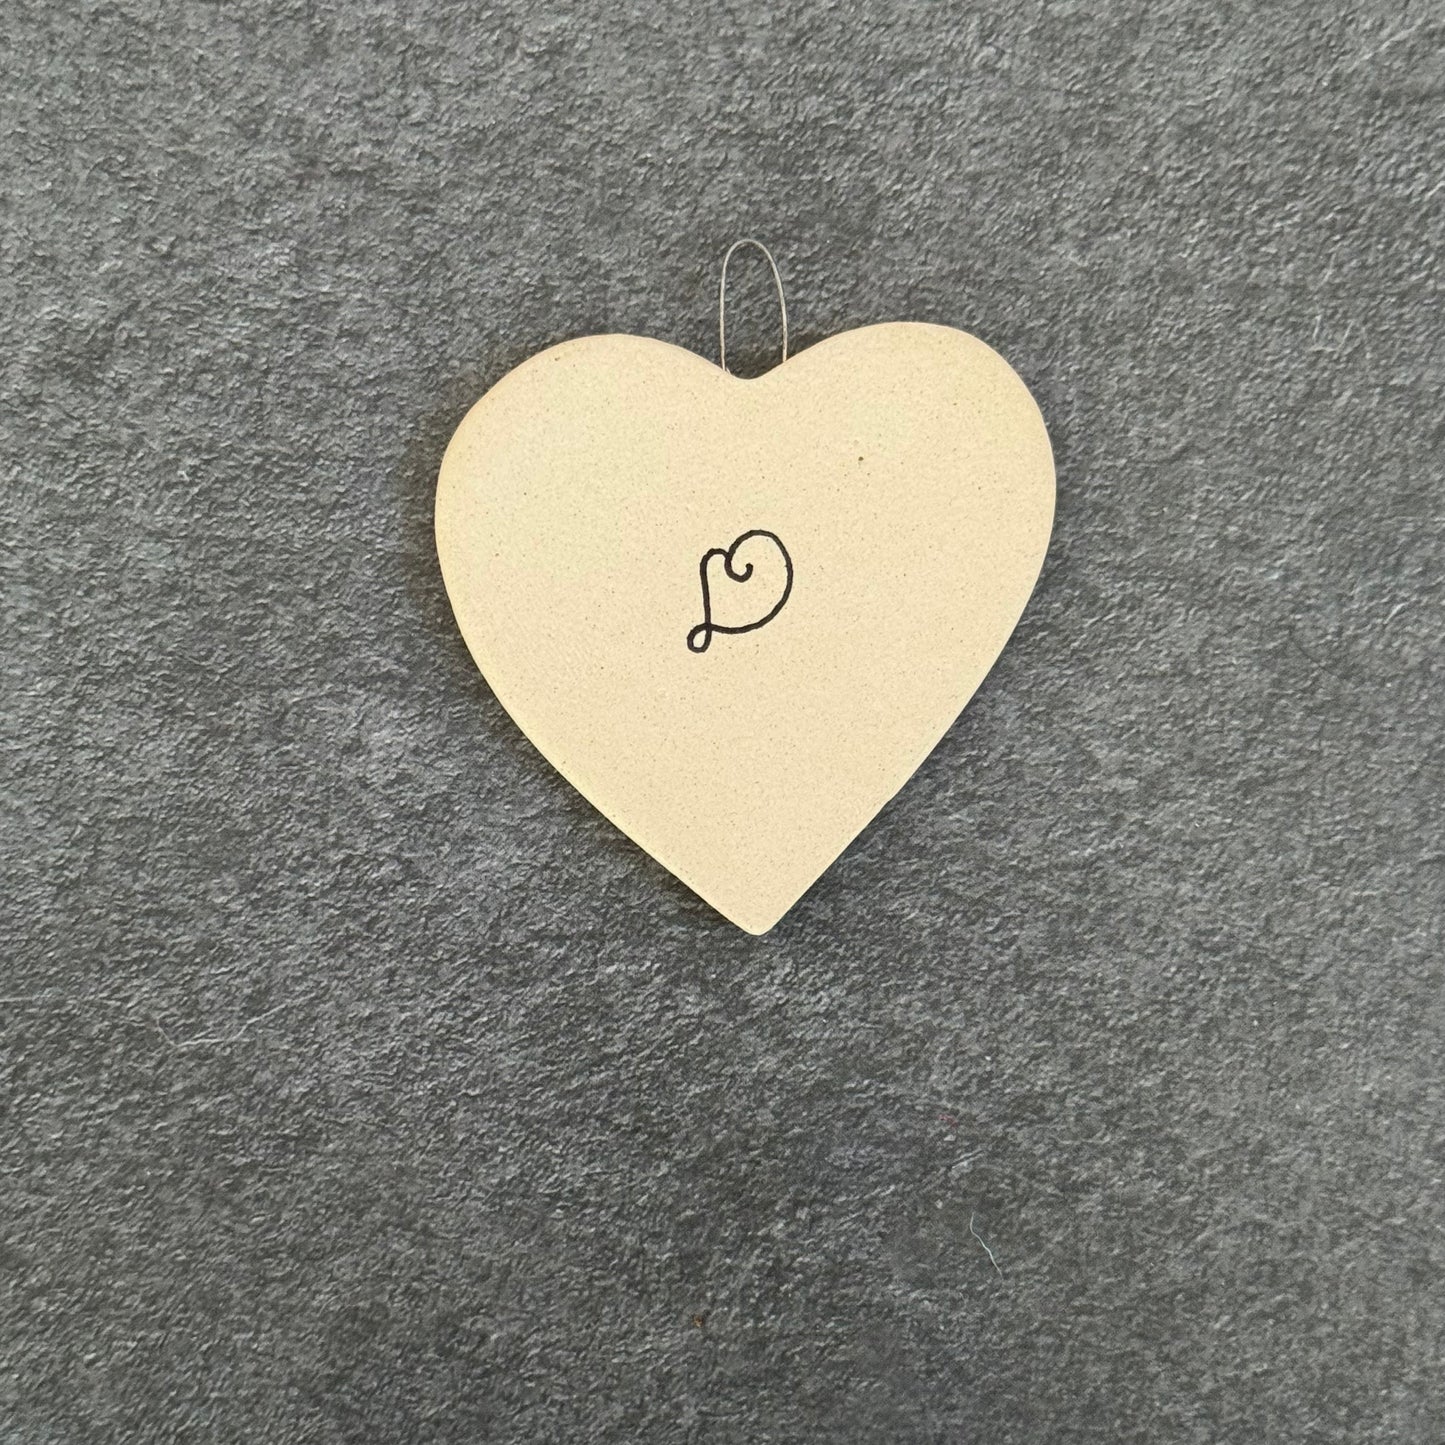 Woven Heart Ceramic Ornament